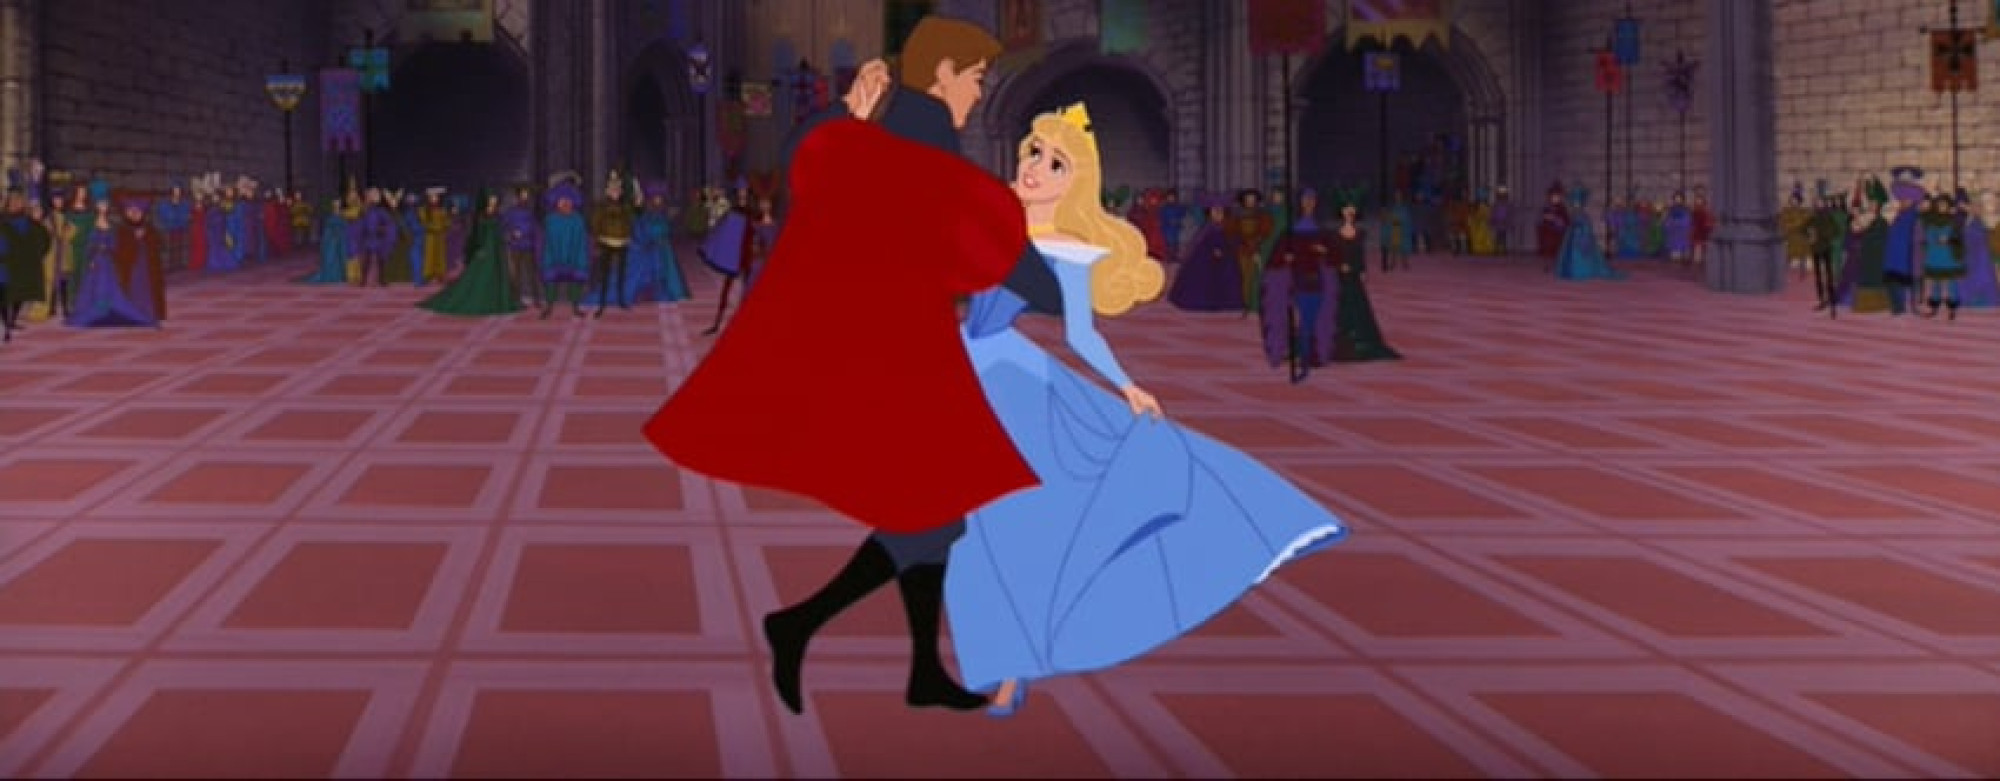 フィリップ王子とオーロラ姫のダンスシーン ベルと野獣のダンスシーン キャステル Castel ディズニー情報